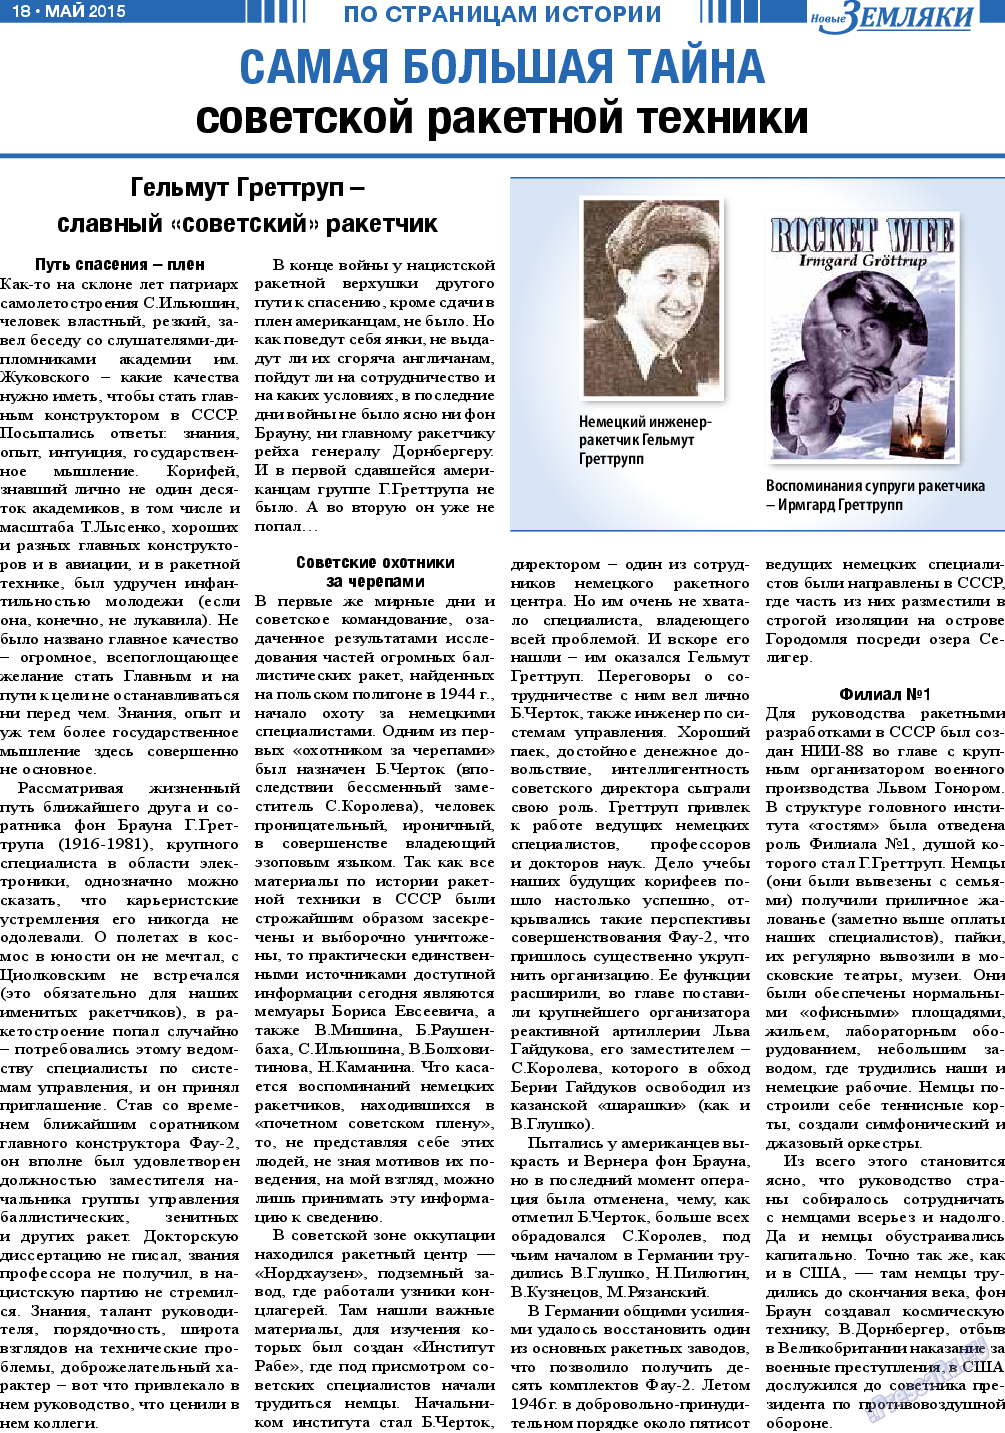 Новые Земляки, газета. 2015 №5 стр.18